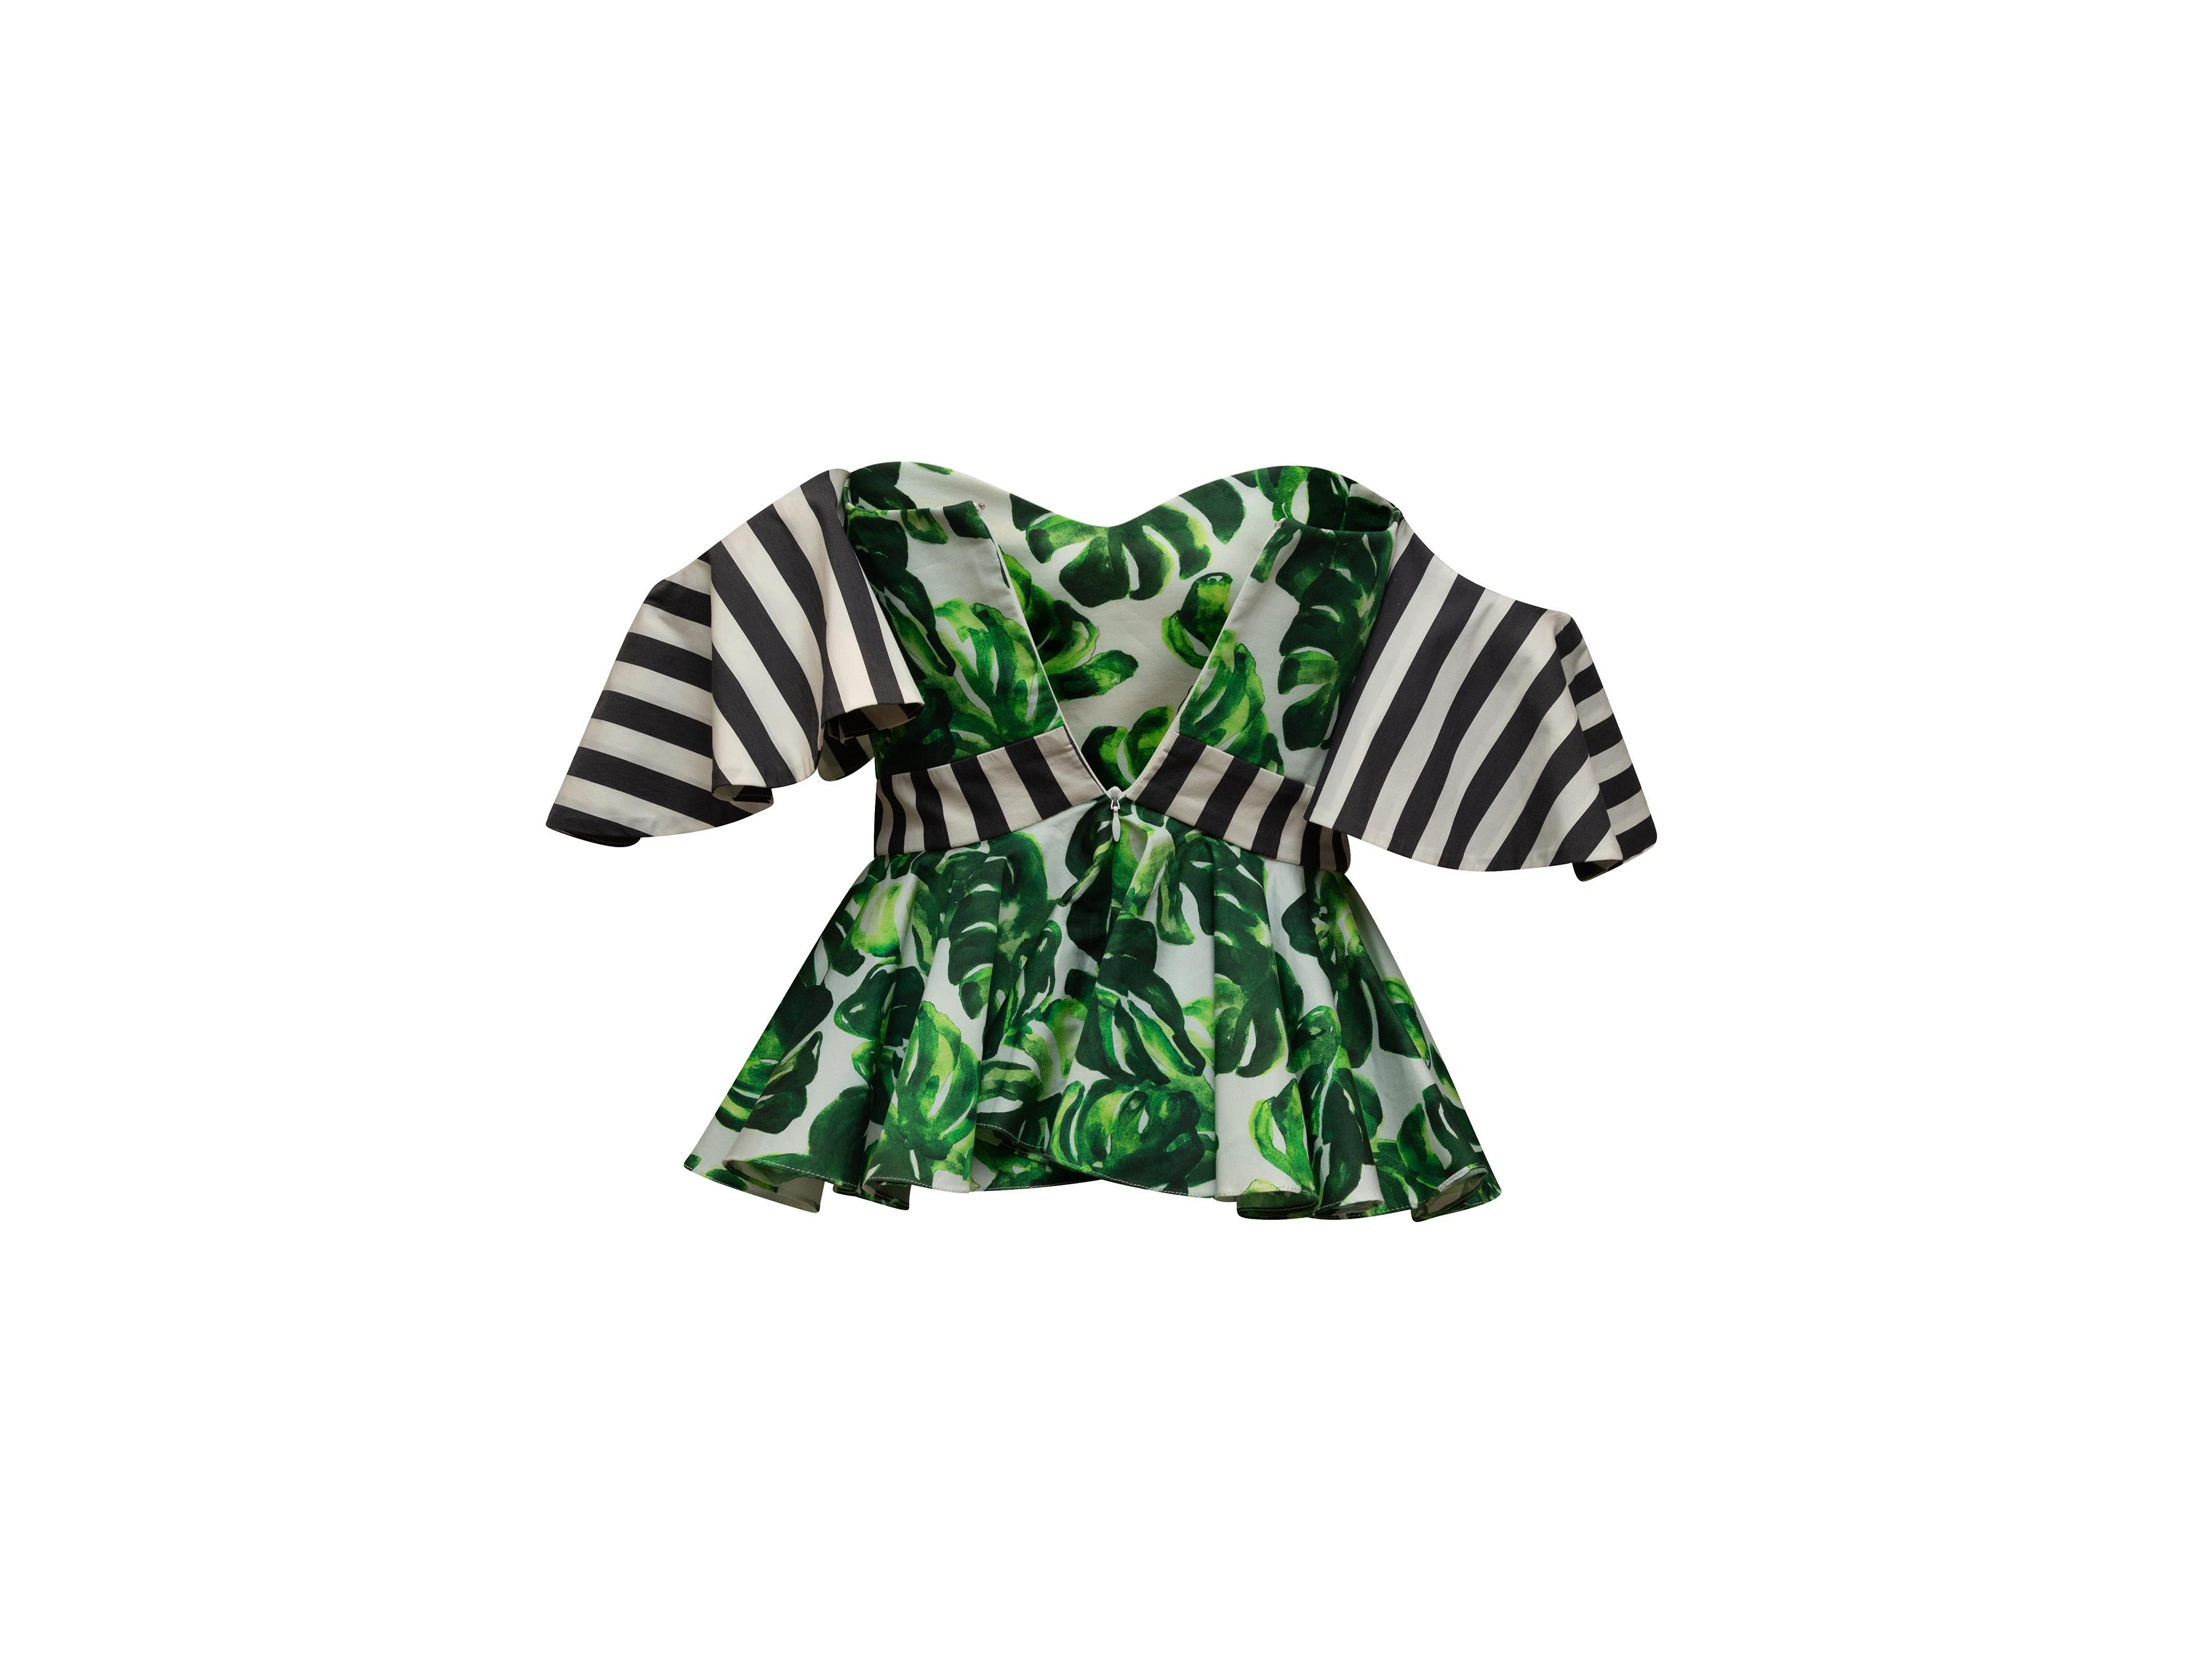 Black Caroline Constas Green & Multicolor Monstera Print Off-The-Shoulder Top